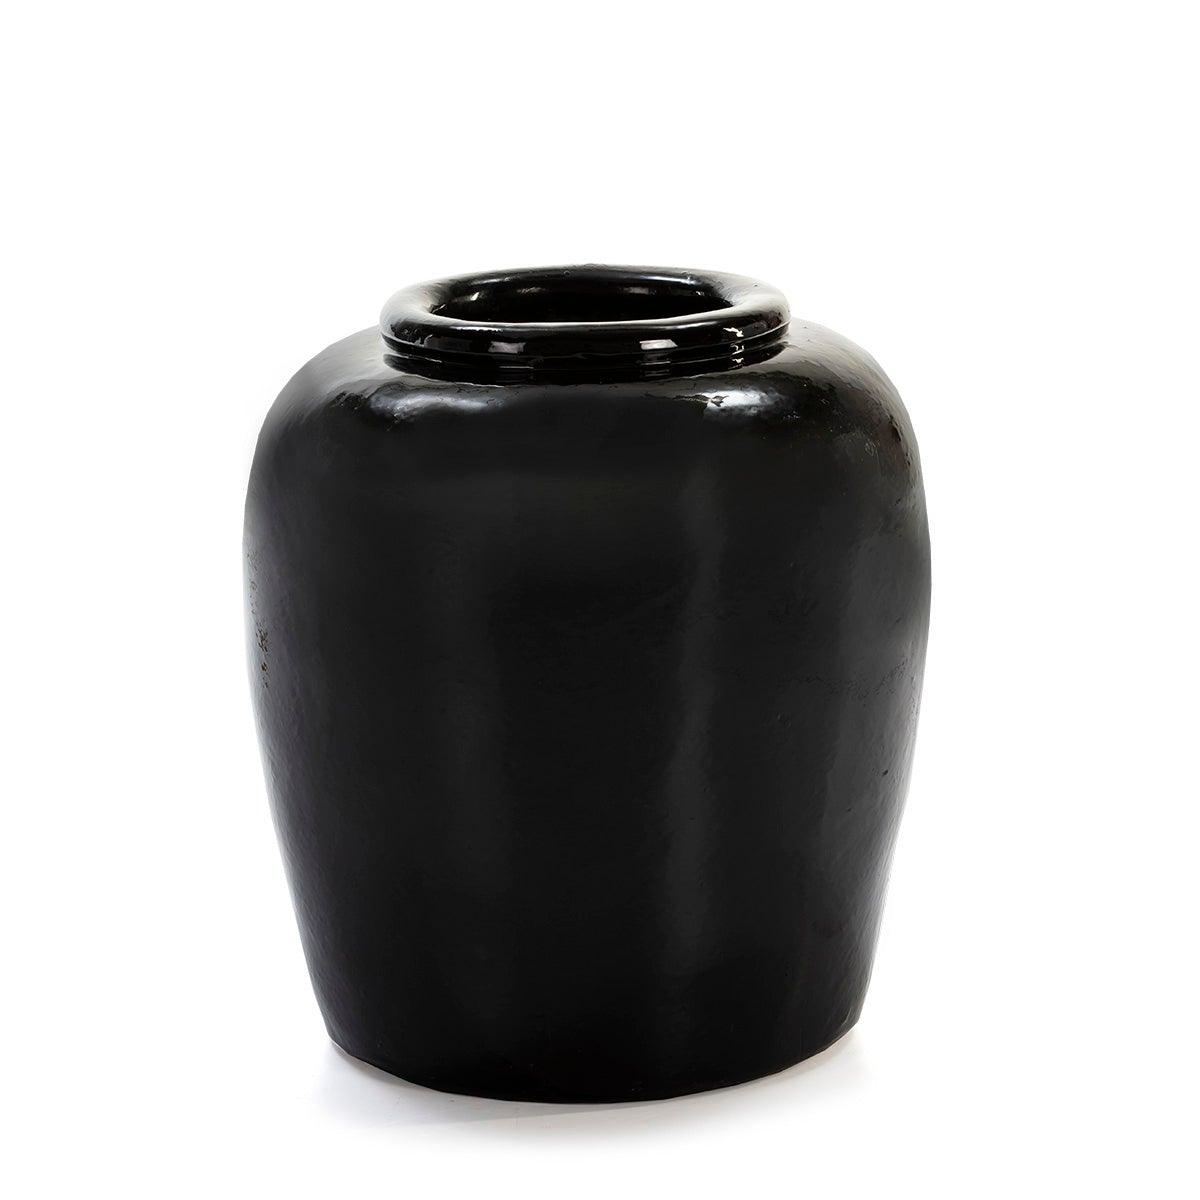 Round Black Ceramic Vase